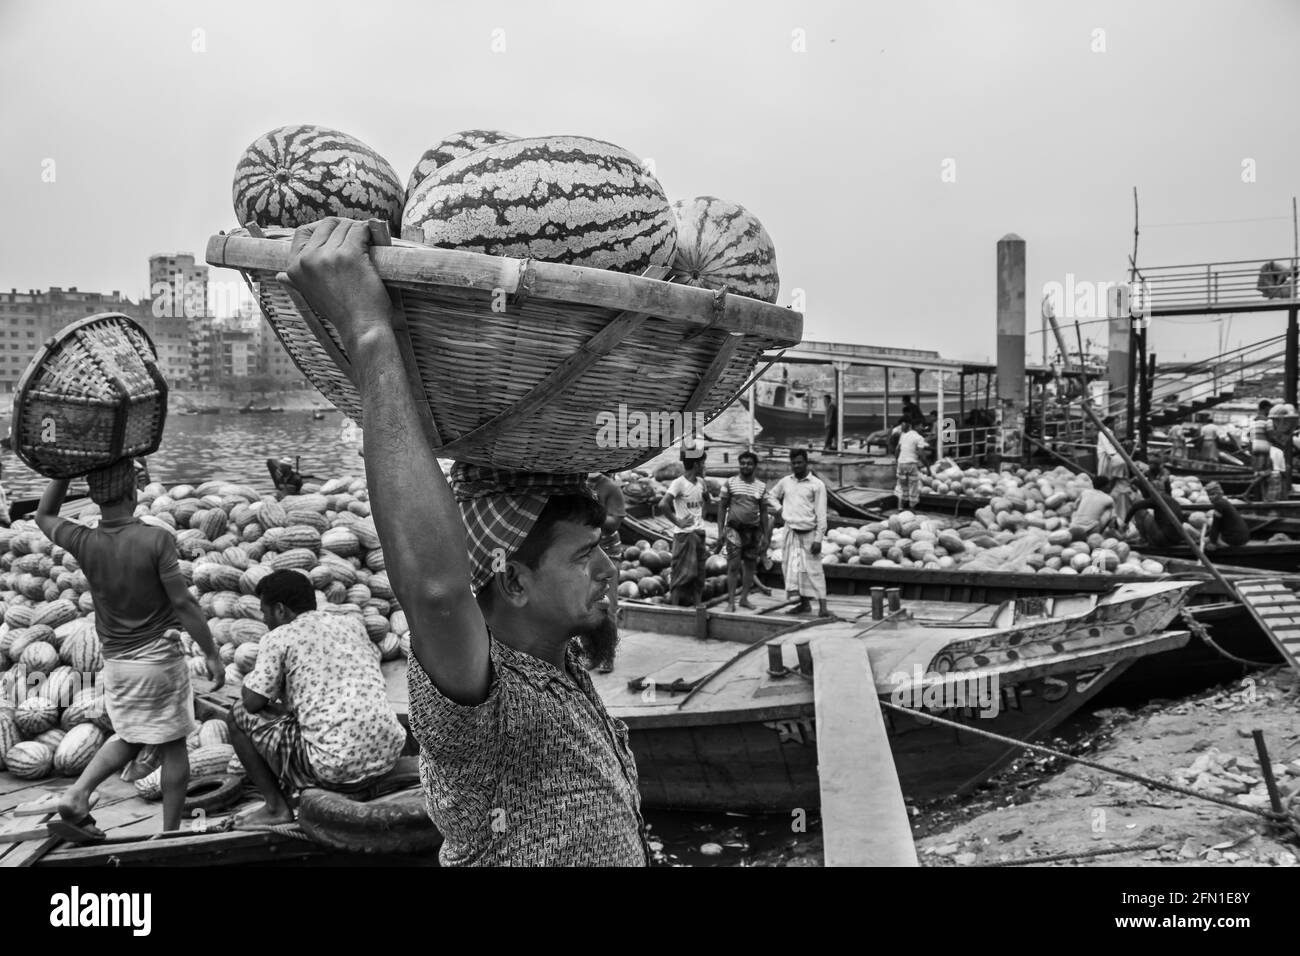 Pastèque en amont du bateau pour la vente J'ai pris cette image le 29 mars 2021 de Dhaka, Bangladesh, Asie du Sud Banque D'Images